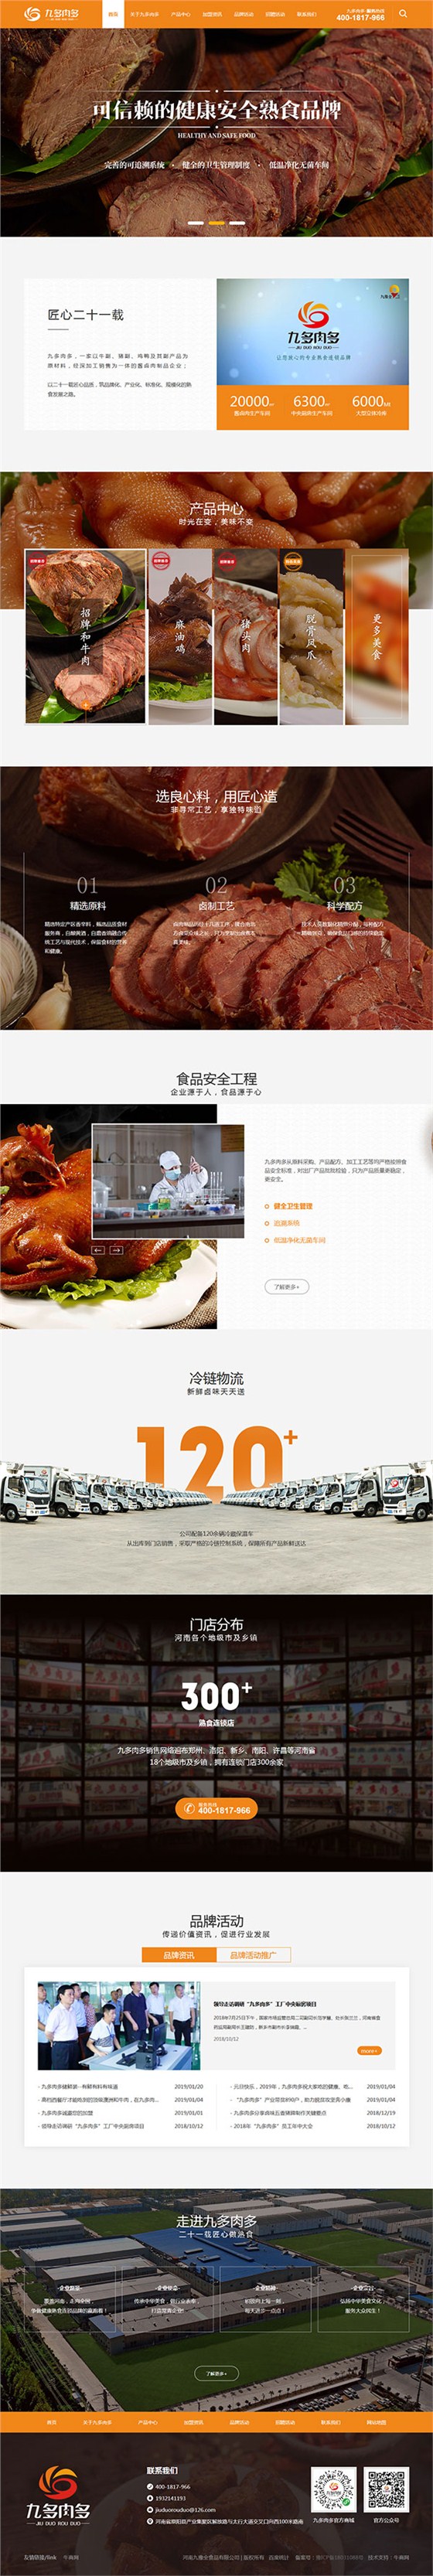 九多肉多熟食-营销型网站页面